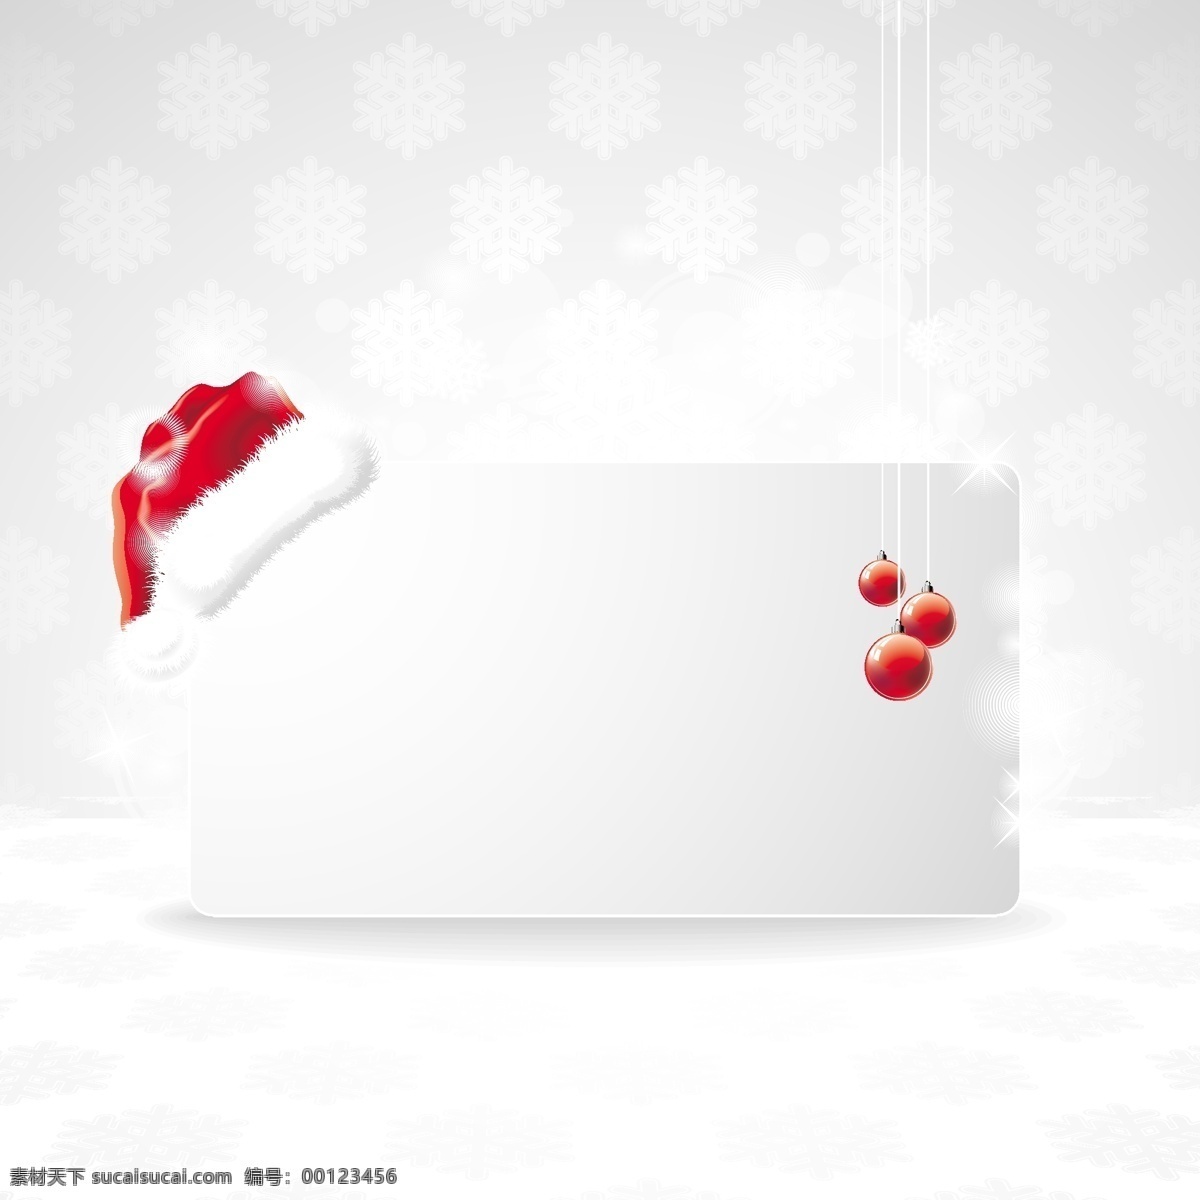 卡通 圣诞节 元素 装饰 边框 矢量 素 吊球 卡通男孩 礼物 铃铛 圣诞节元素 圣诞帽 圣诞树 糖果 装饰边框